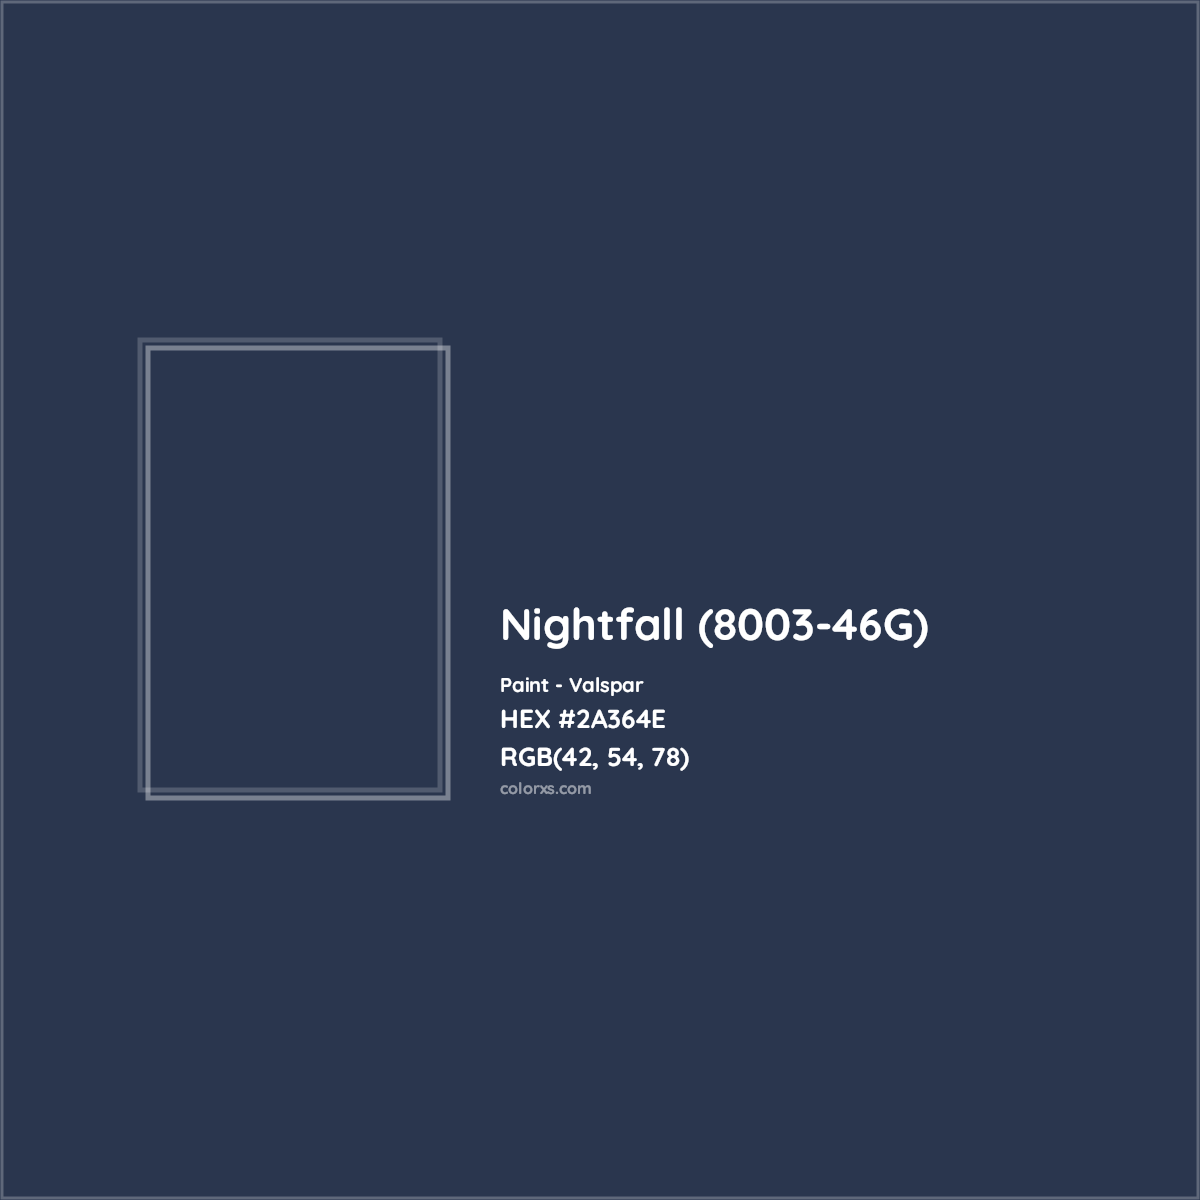 HEX #2A364E Nightfall (8003-46G) Paint Valspar - Color Code